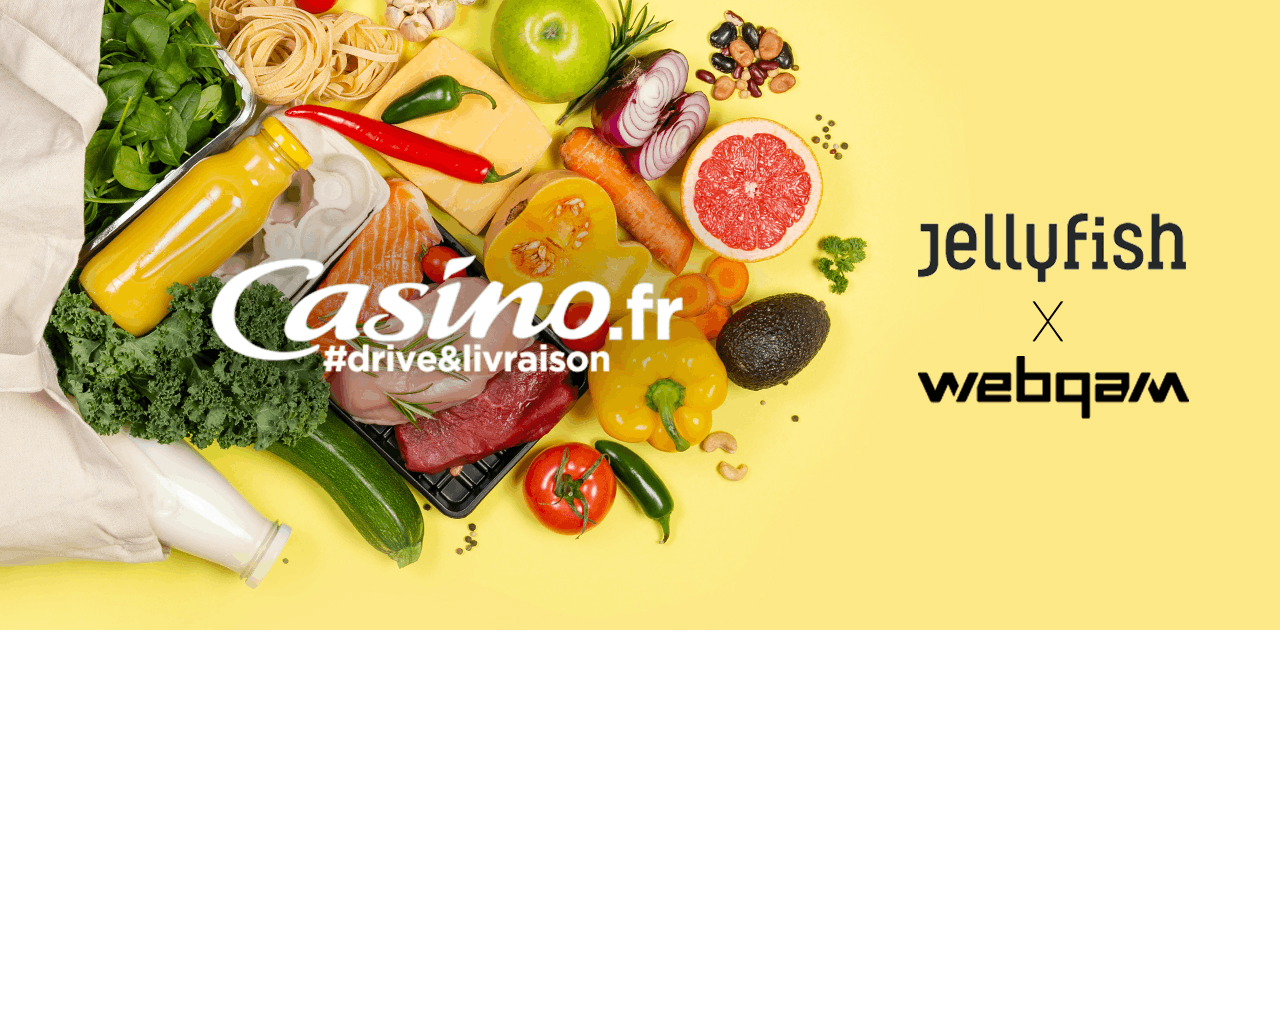 Les logos Casino.fr Webqam et Jellyfish sur fond jaune et produits alimentaires